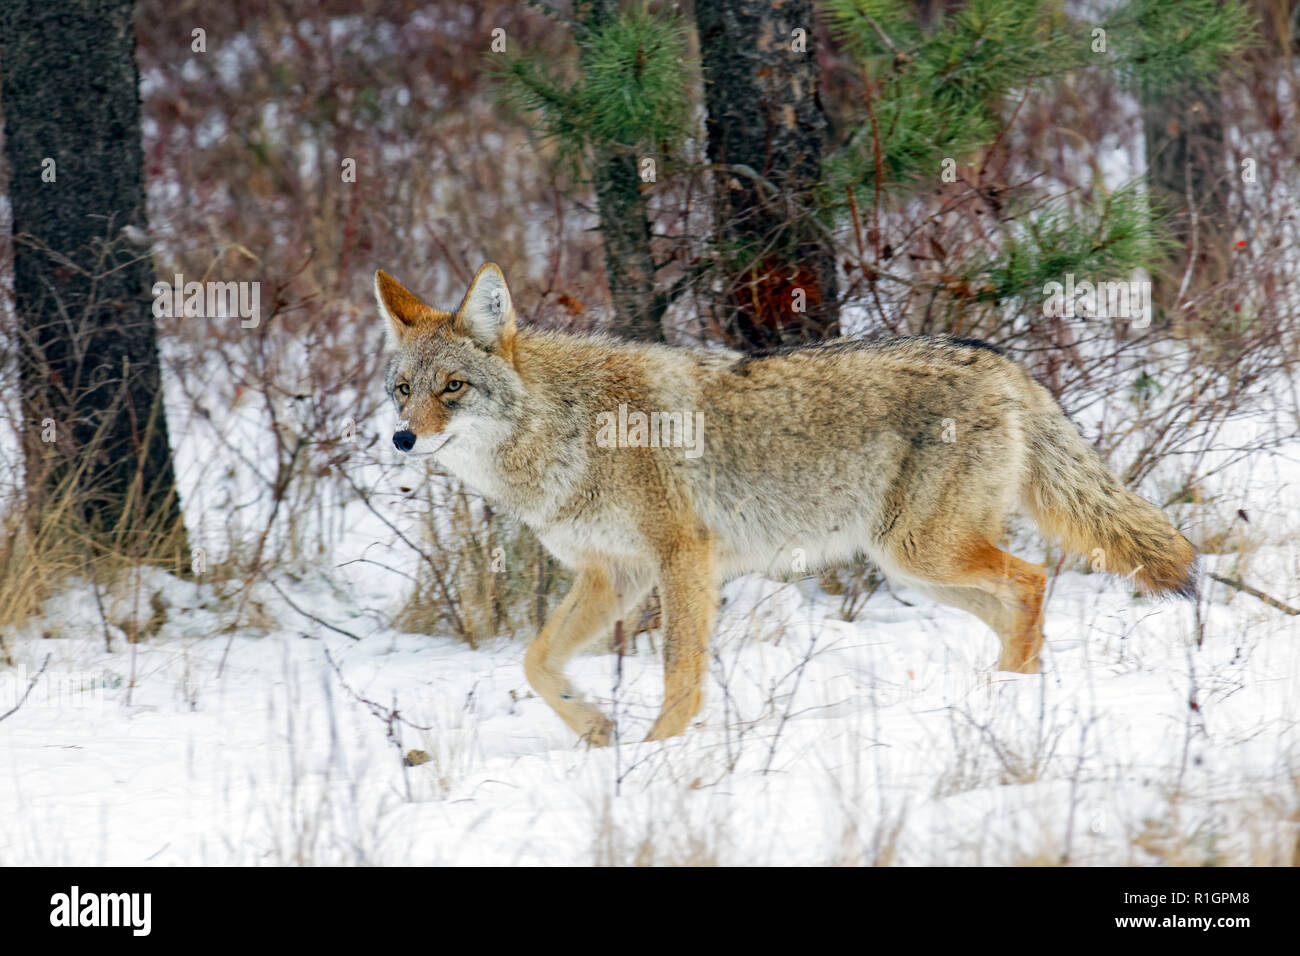 42,751.09127 Nahaufnahme eines Alert nach Coyote gehen auf eine Spur im Schnee verschneiten Wald Bürste unter Bäumen im Wald Stockfoto